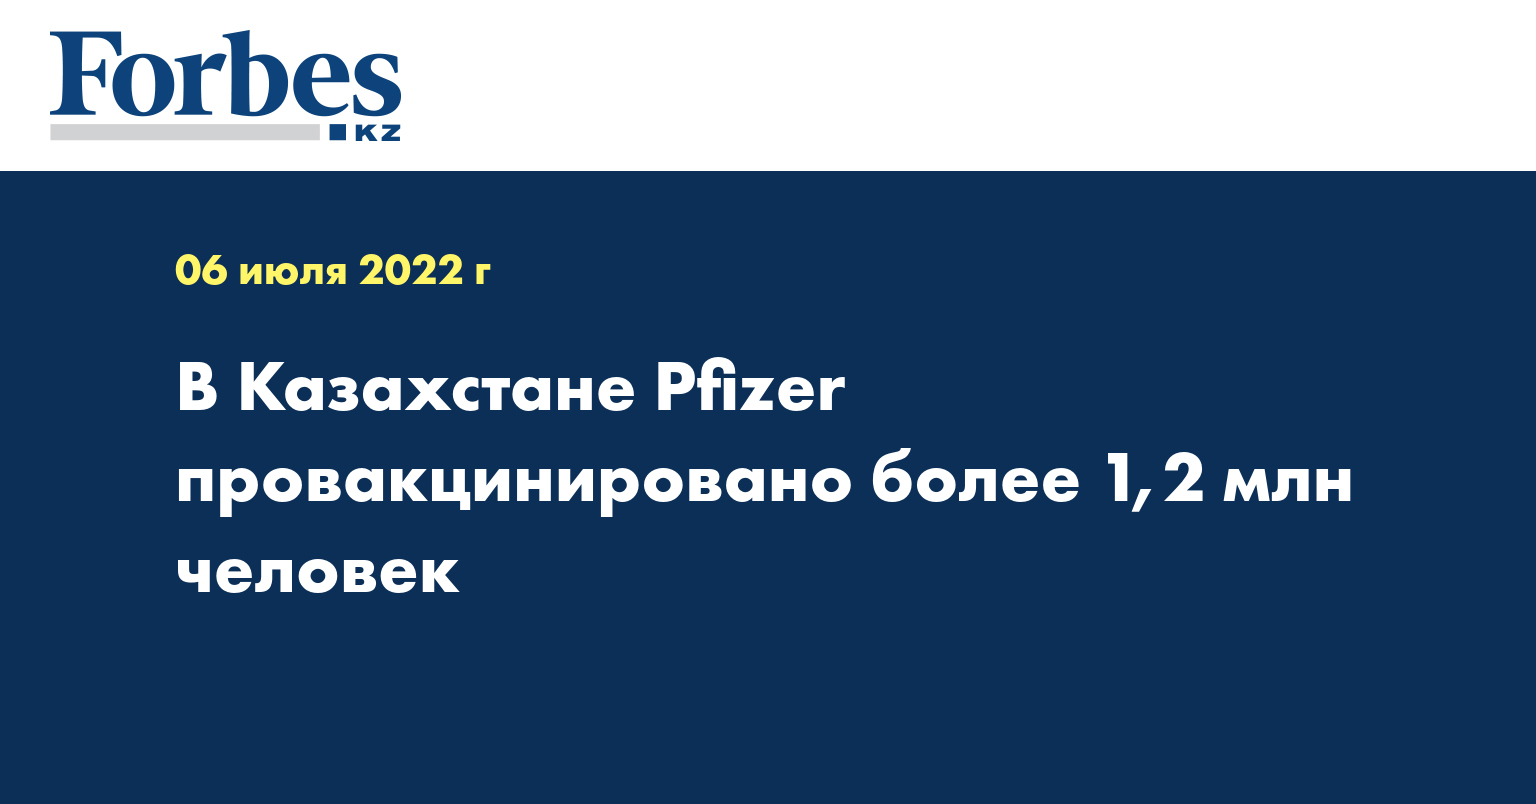 В Казахстане Pfizer провакцинировано более 1,2 млн человек